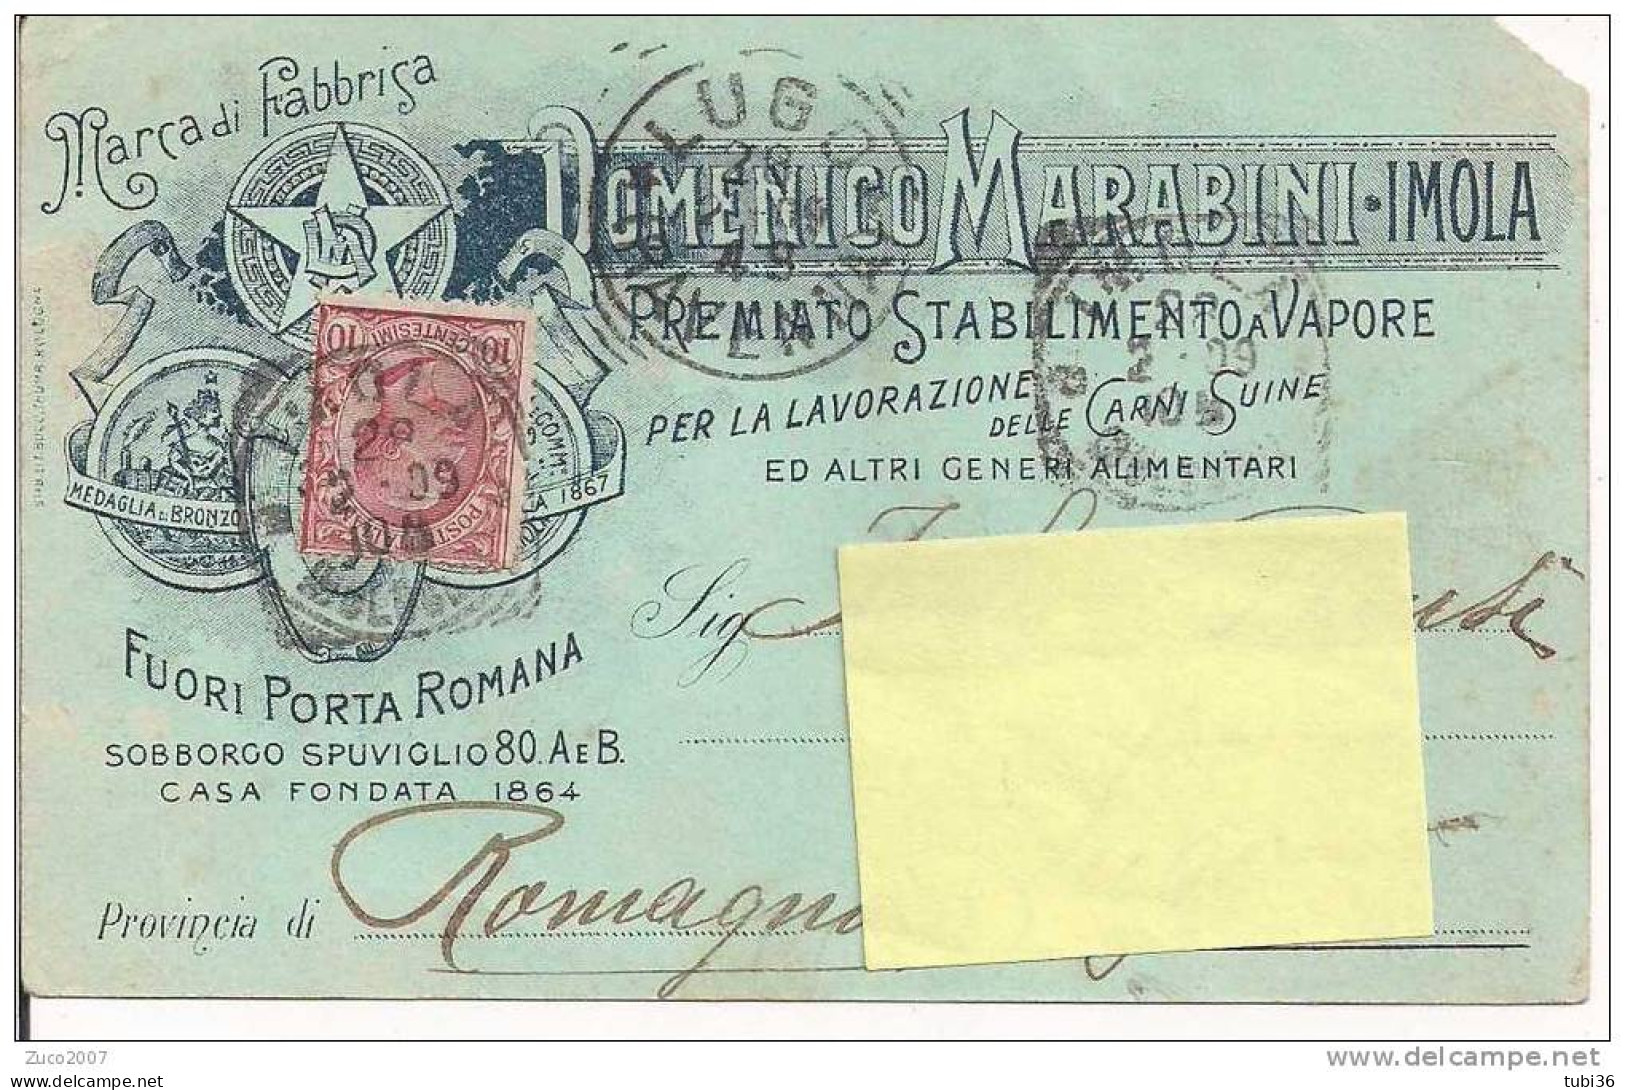 DOMENICO MARABINI - IMOLA - CARTOLINA COMMERCIALE VIAGGIATA 1909 - TIMBRO POSTE IMOLA  BOLOGNA - Imola